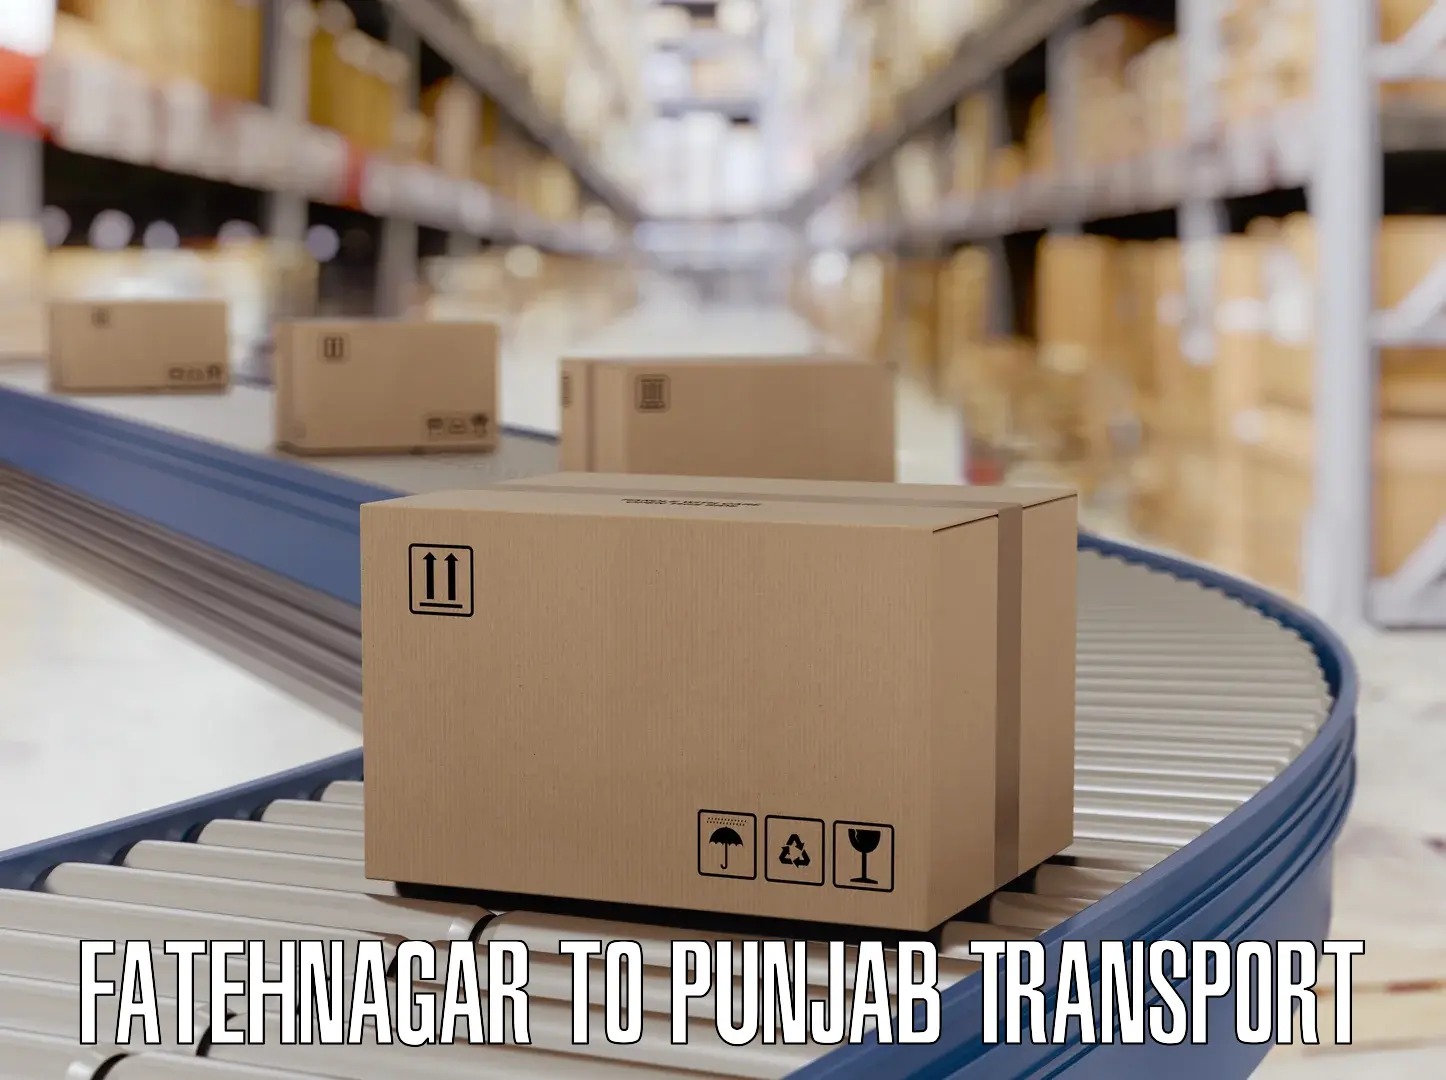 Road transport online services Fatehnagar to Amritsar